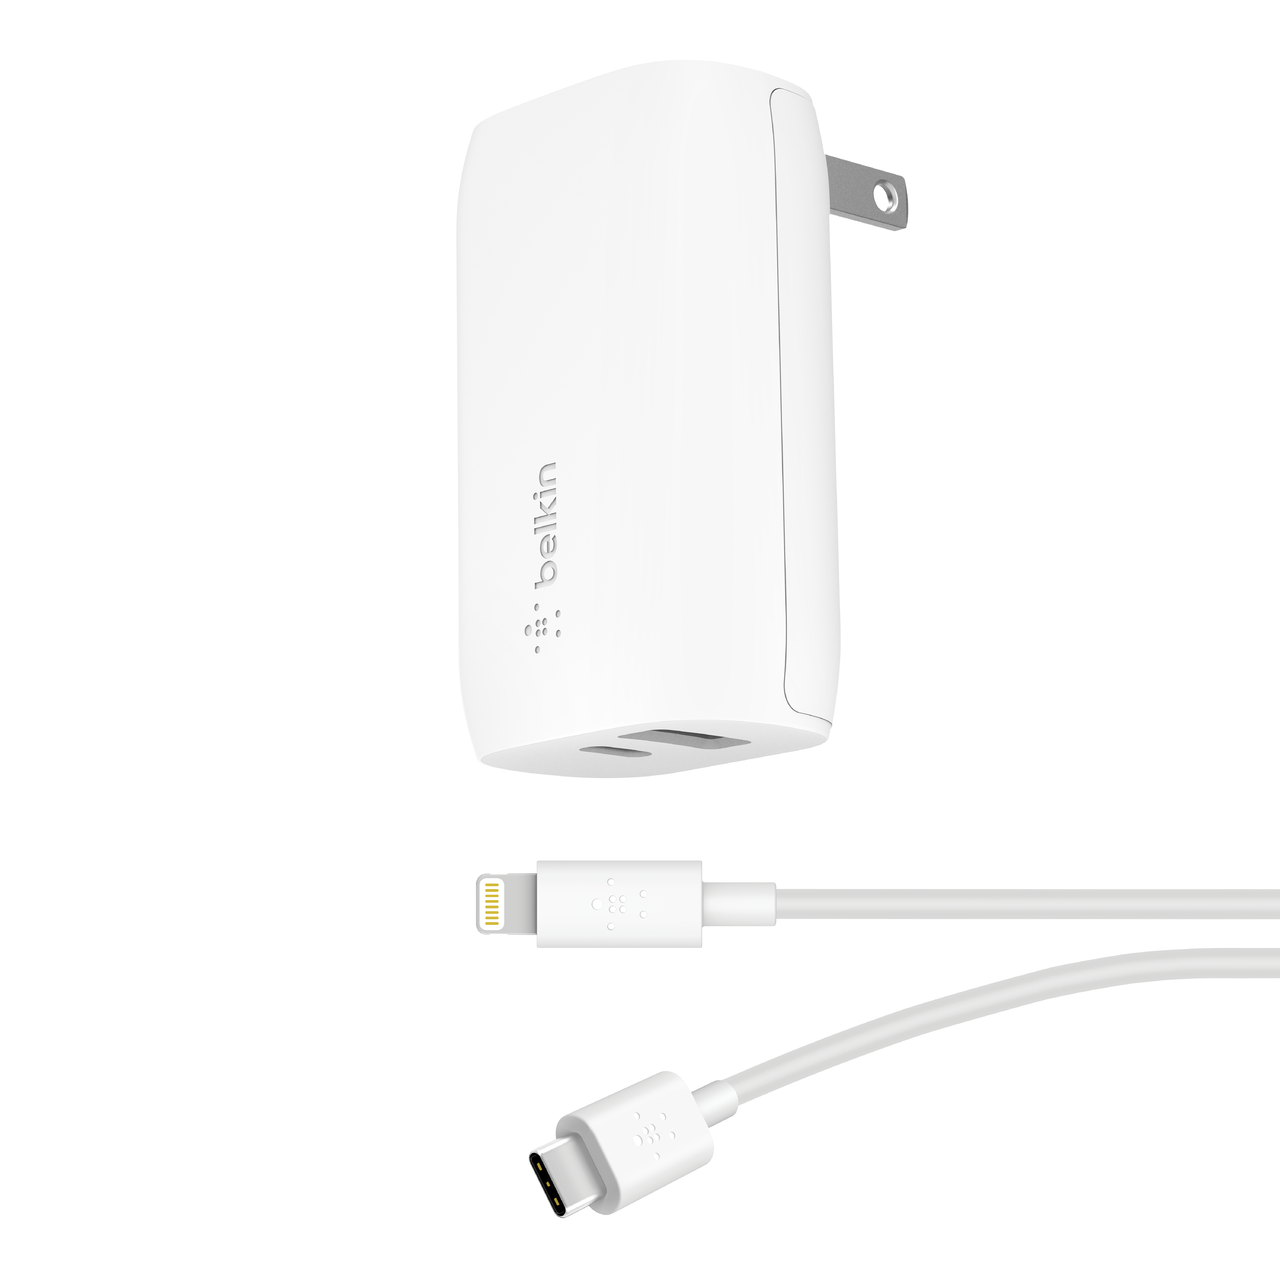 Câble court chargeur iPhone 5, 6, iPad Retina Certifié APPLE MFi